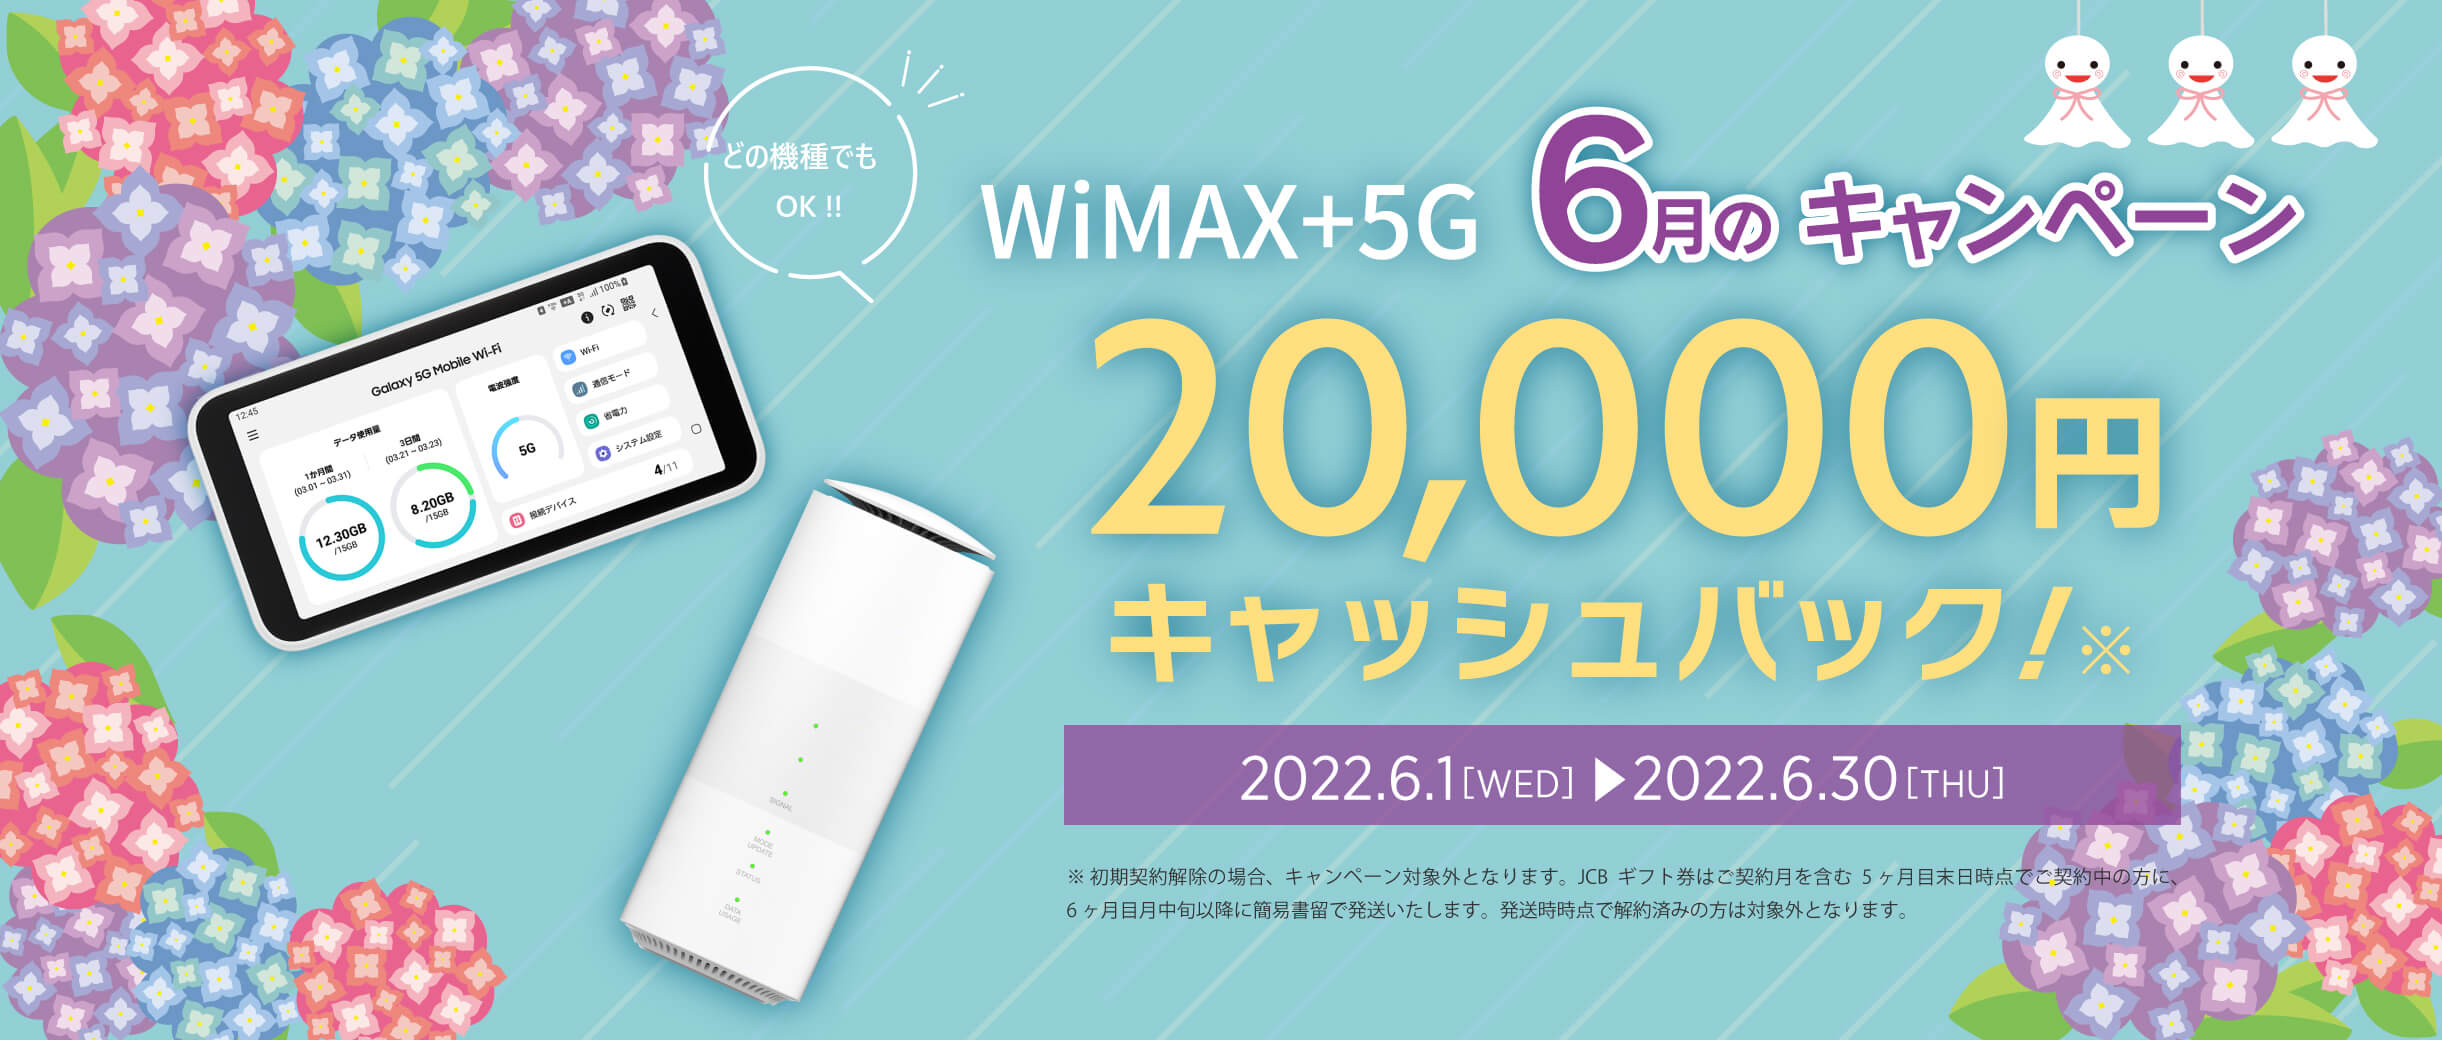 WiMAX 5g ワイマックス キャッシュバック キャンペーン